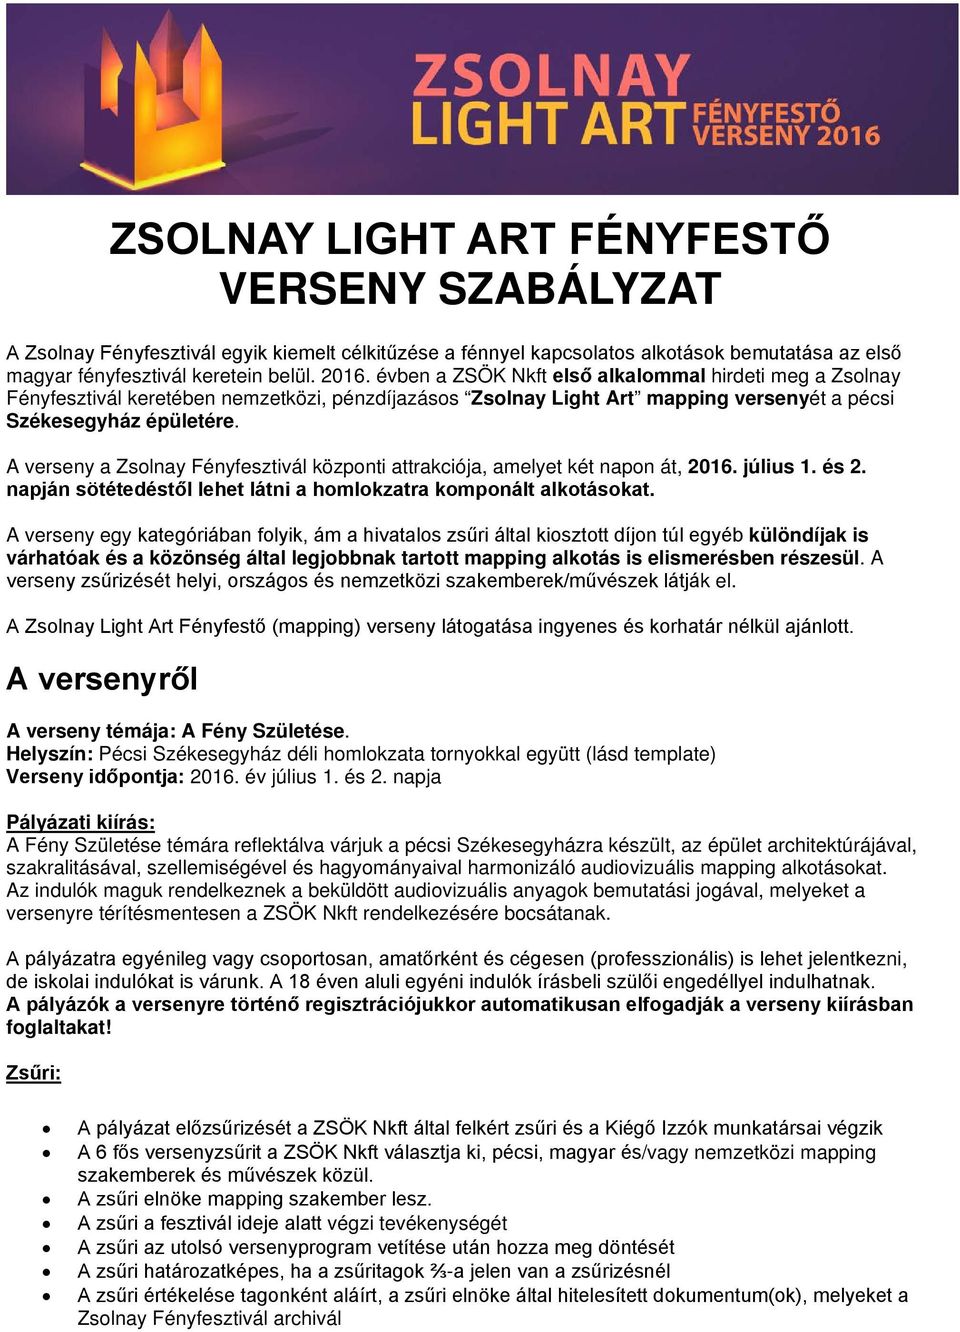 A verseny a Zsolnay Fényfesztivál központi attrakciója, amelyet két napon át, 2016. július 1. és 2. napján sötétedéstől lehet látni a homlokzatra komponált alkotásokat.